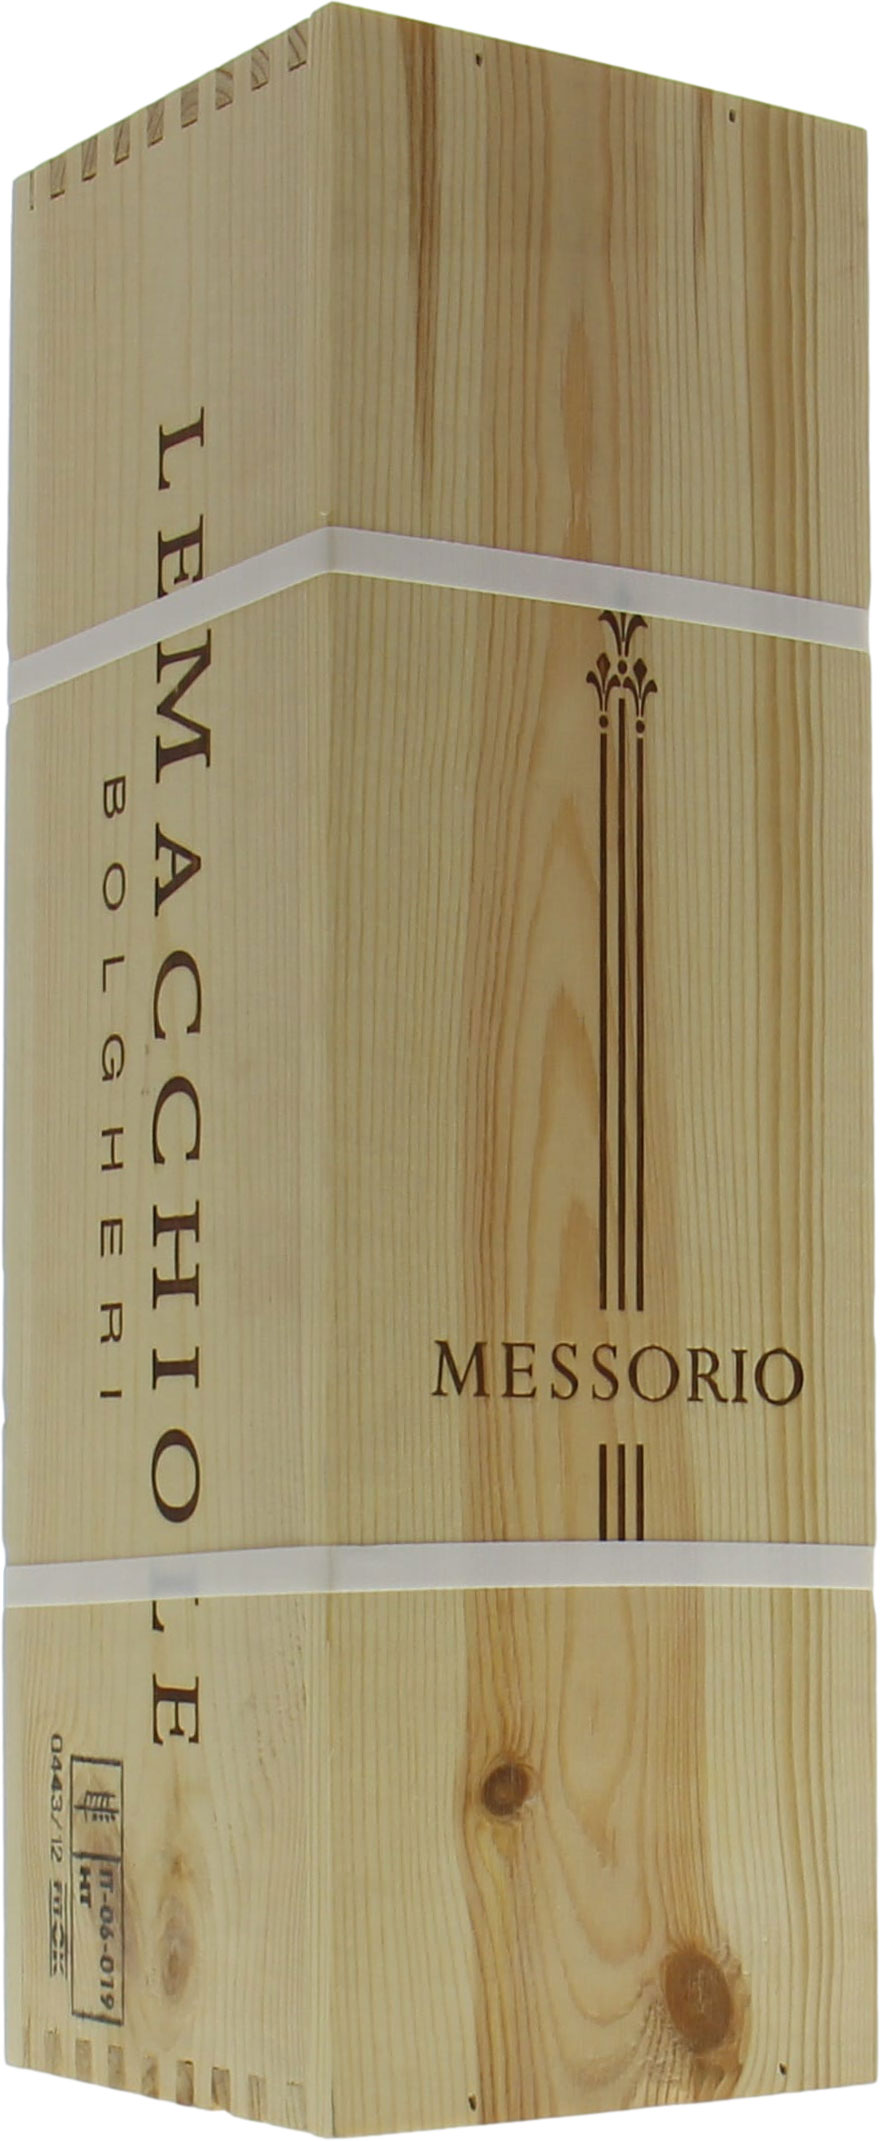 Le Macchiole - Messorio 2012